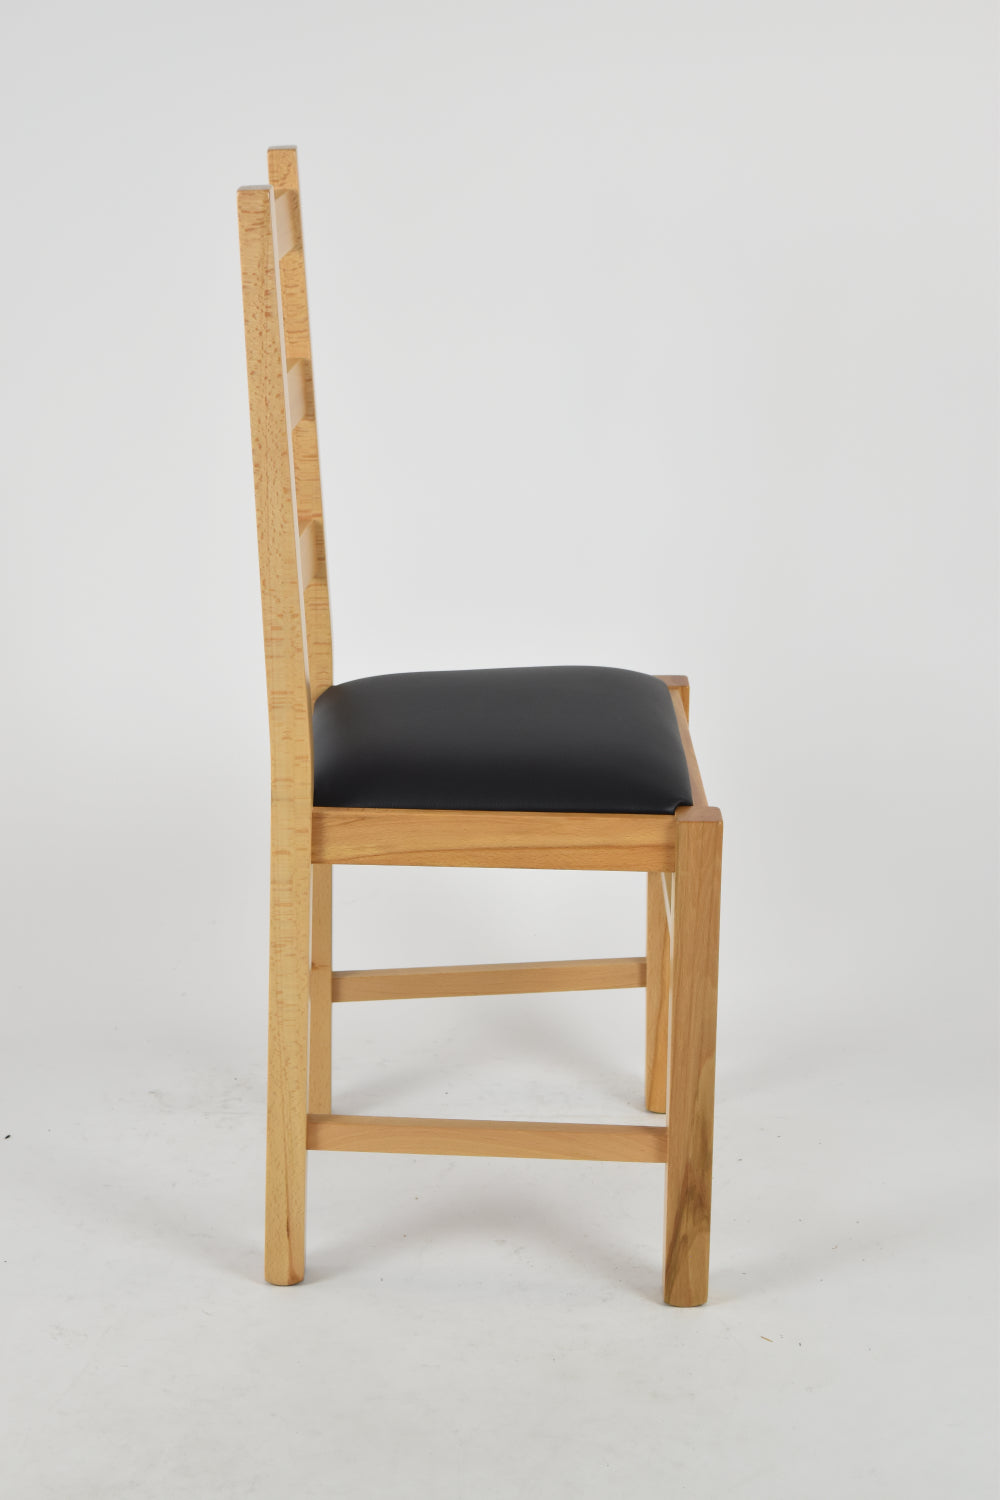 Tommychairs - Set 2 sillas de Cocina y Comedor  Rustica, Estructura en Madera de Haya Color Natural y Asiento tapizado en Polipiel Color Negro